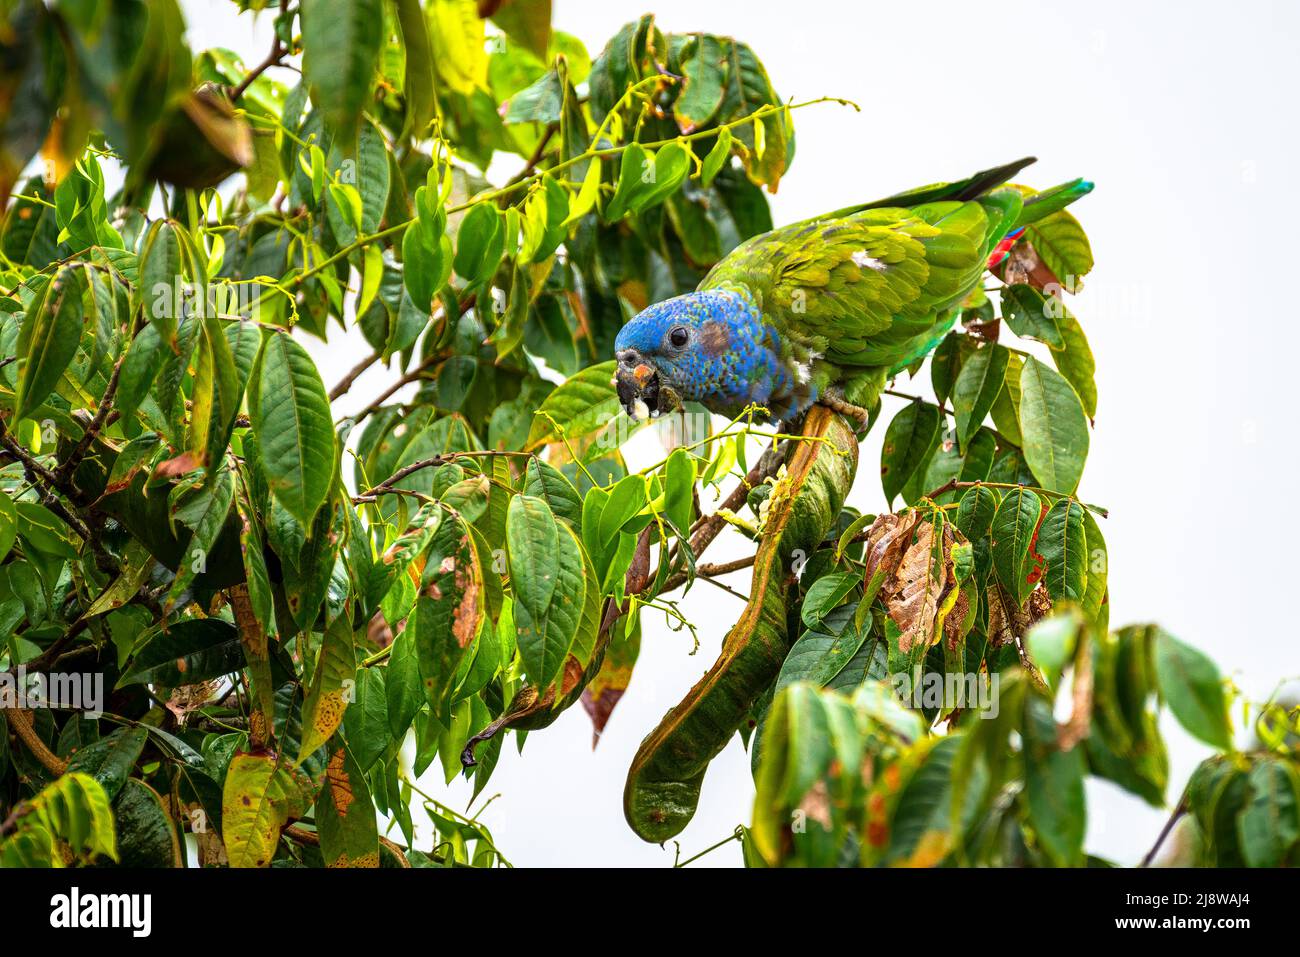 Perroquet à tête bleue se nourrissant sur un arbre à partir de graines Banque D'Images